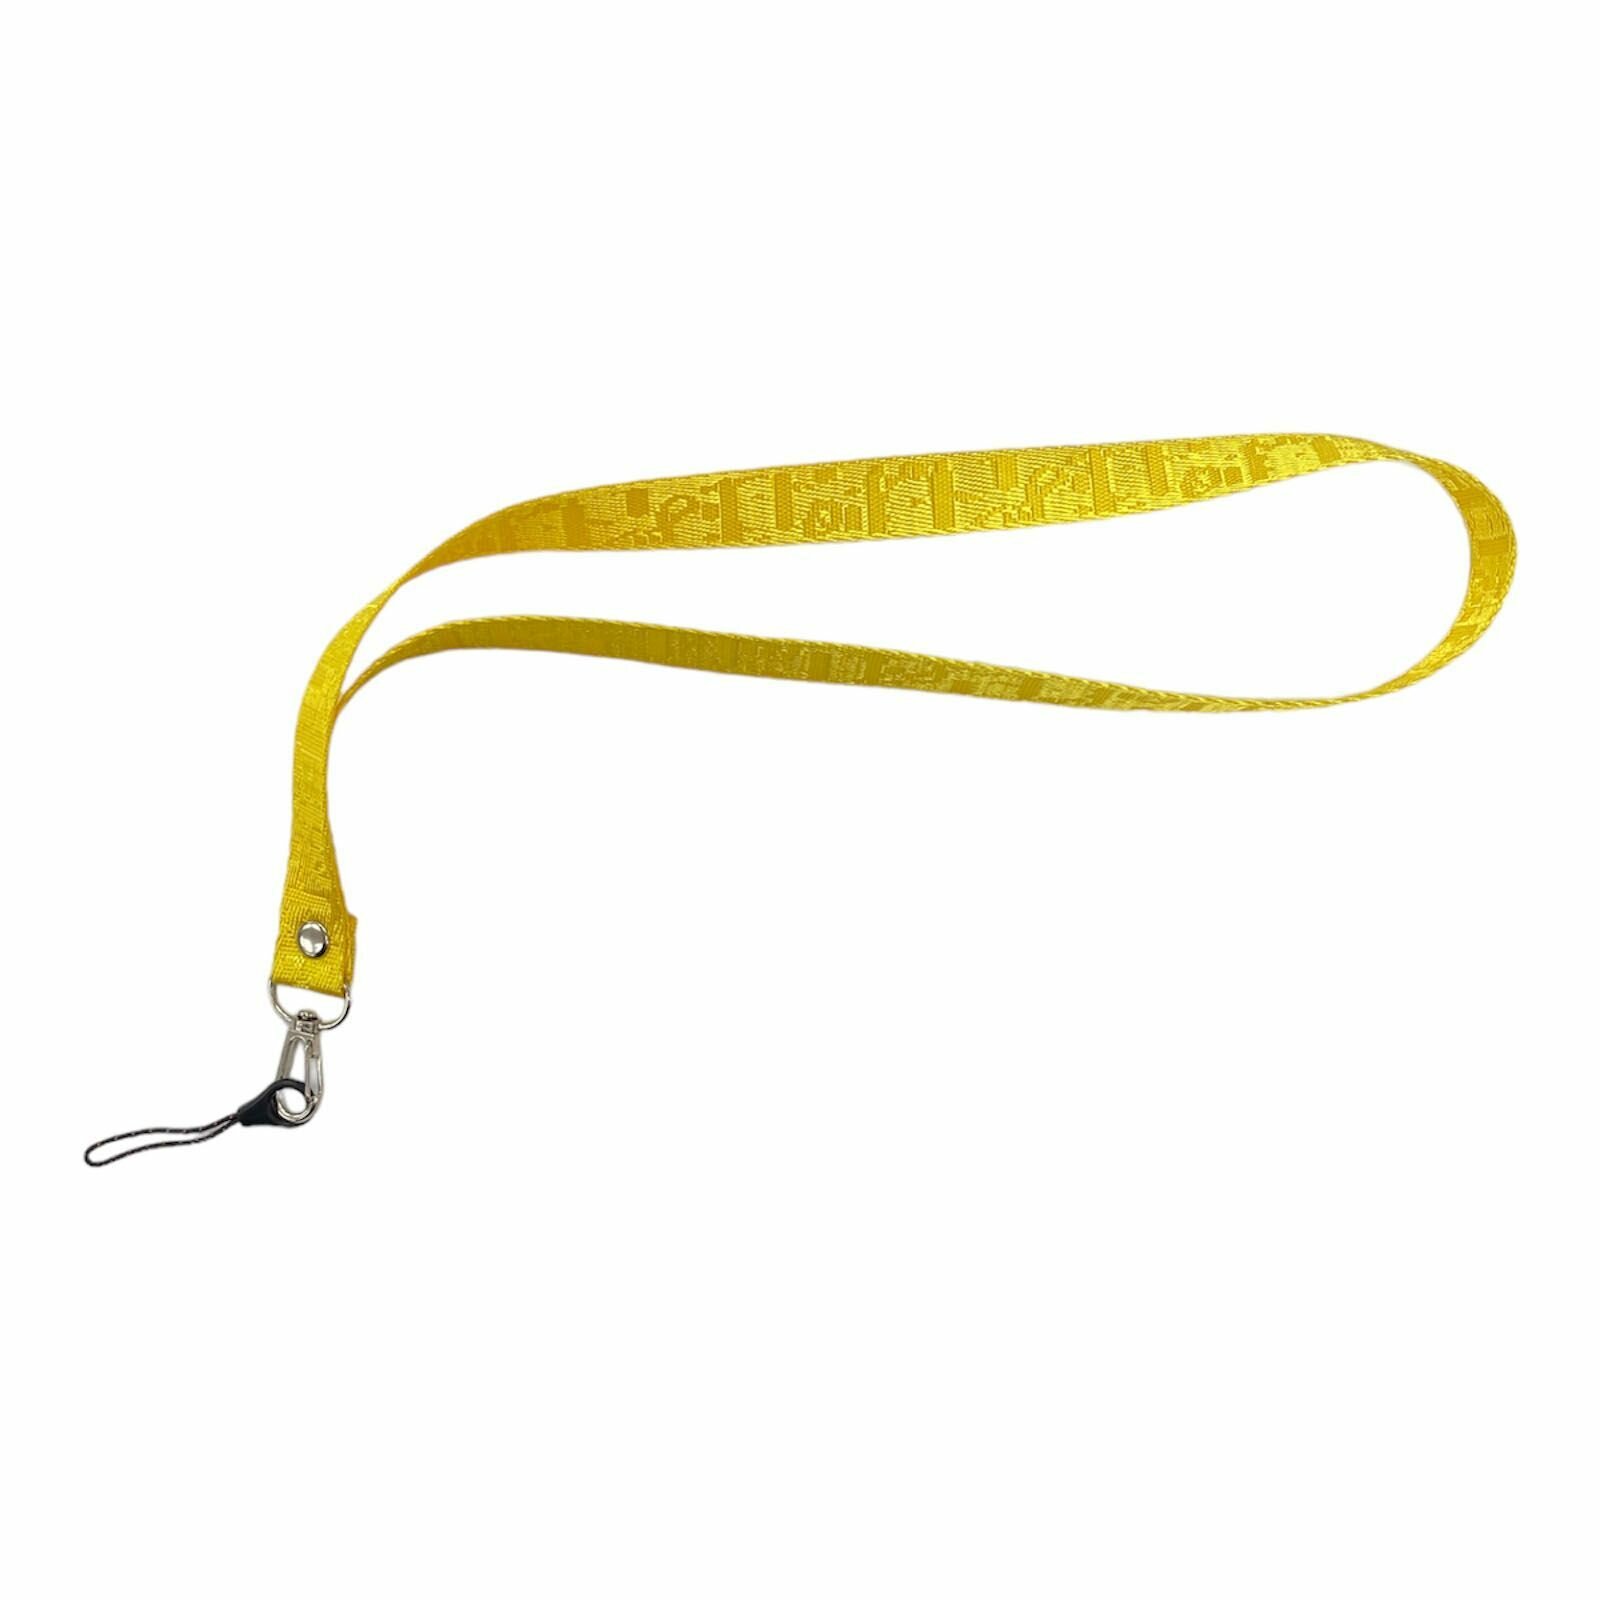 Шнурок для телефона фактурный / Веревка для телефона на шею фактурная / Желтый